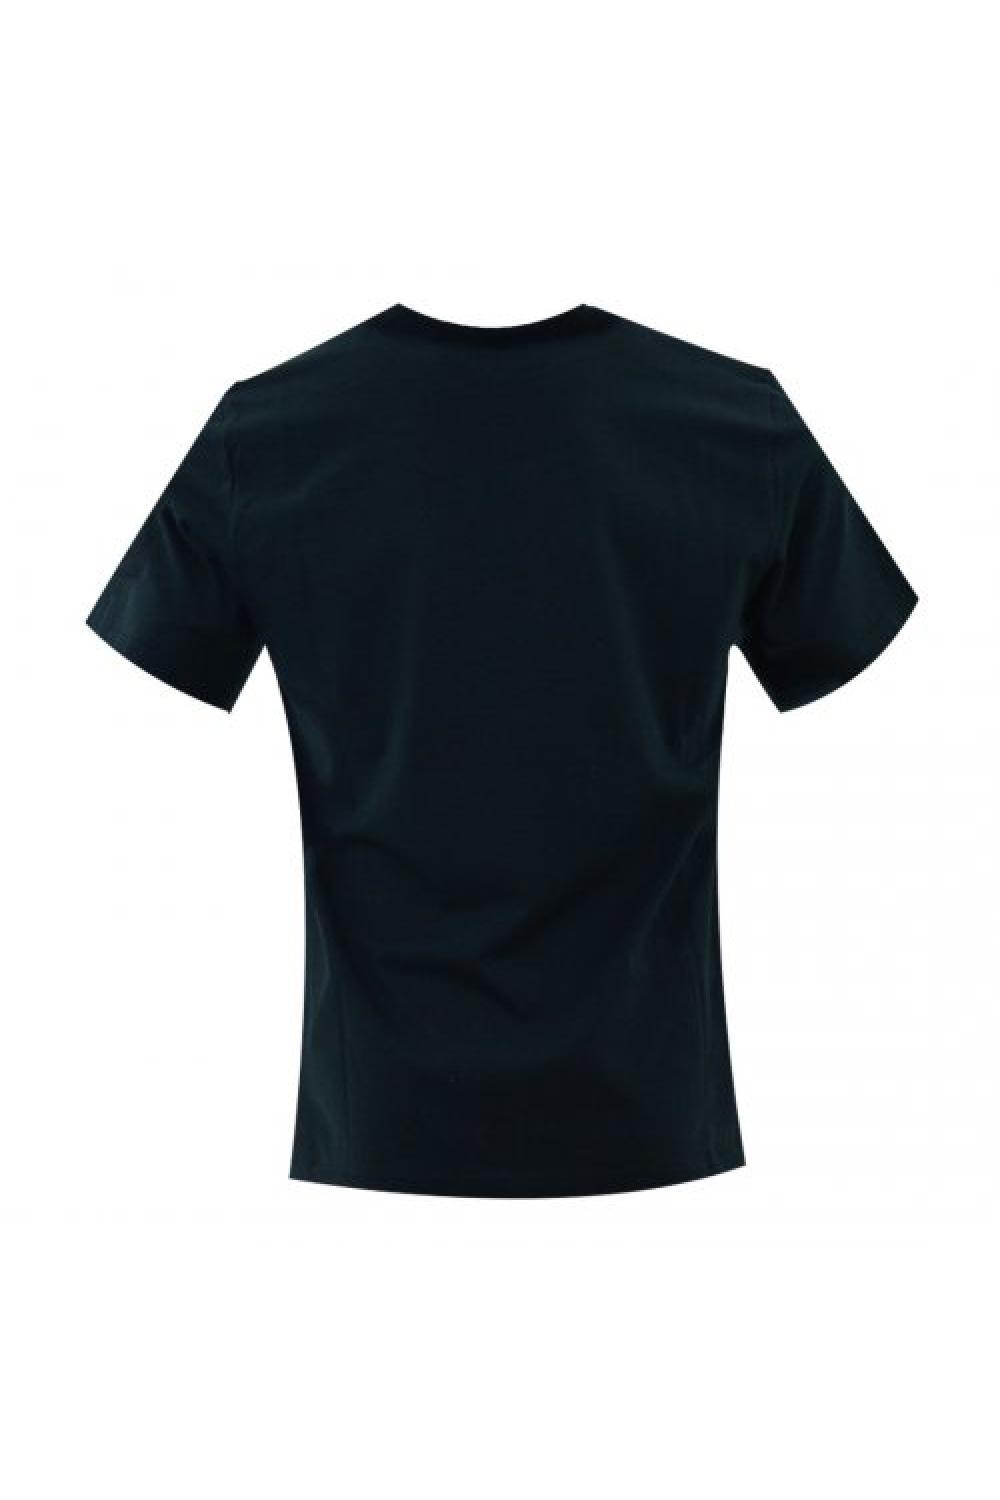 CONVERSE T-shirt Eight Bit Unisex - Black (10022933-A01)